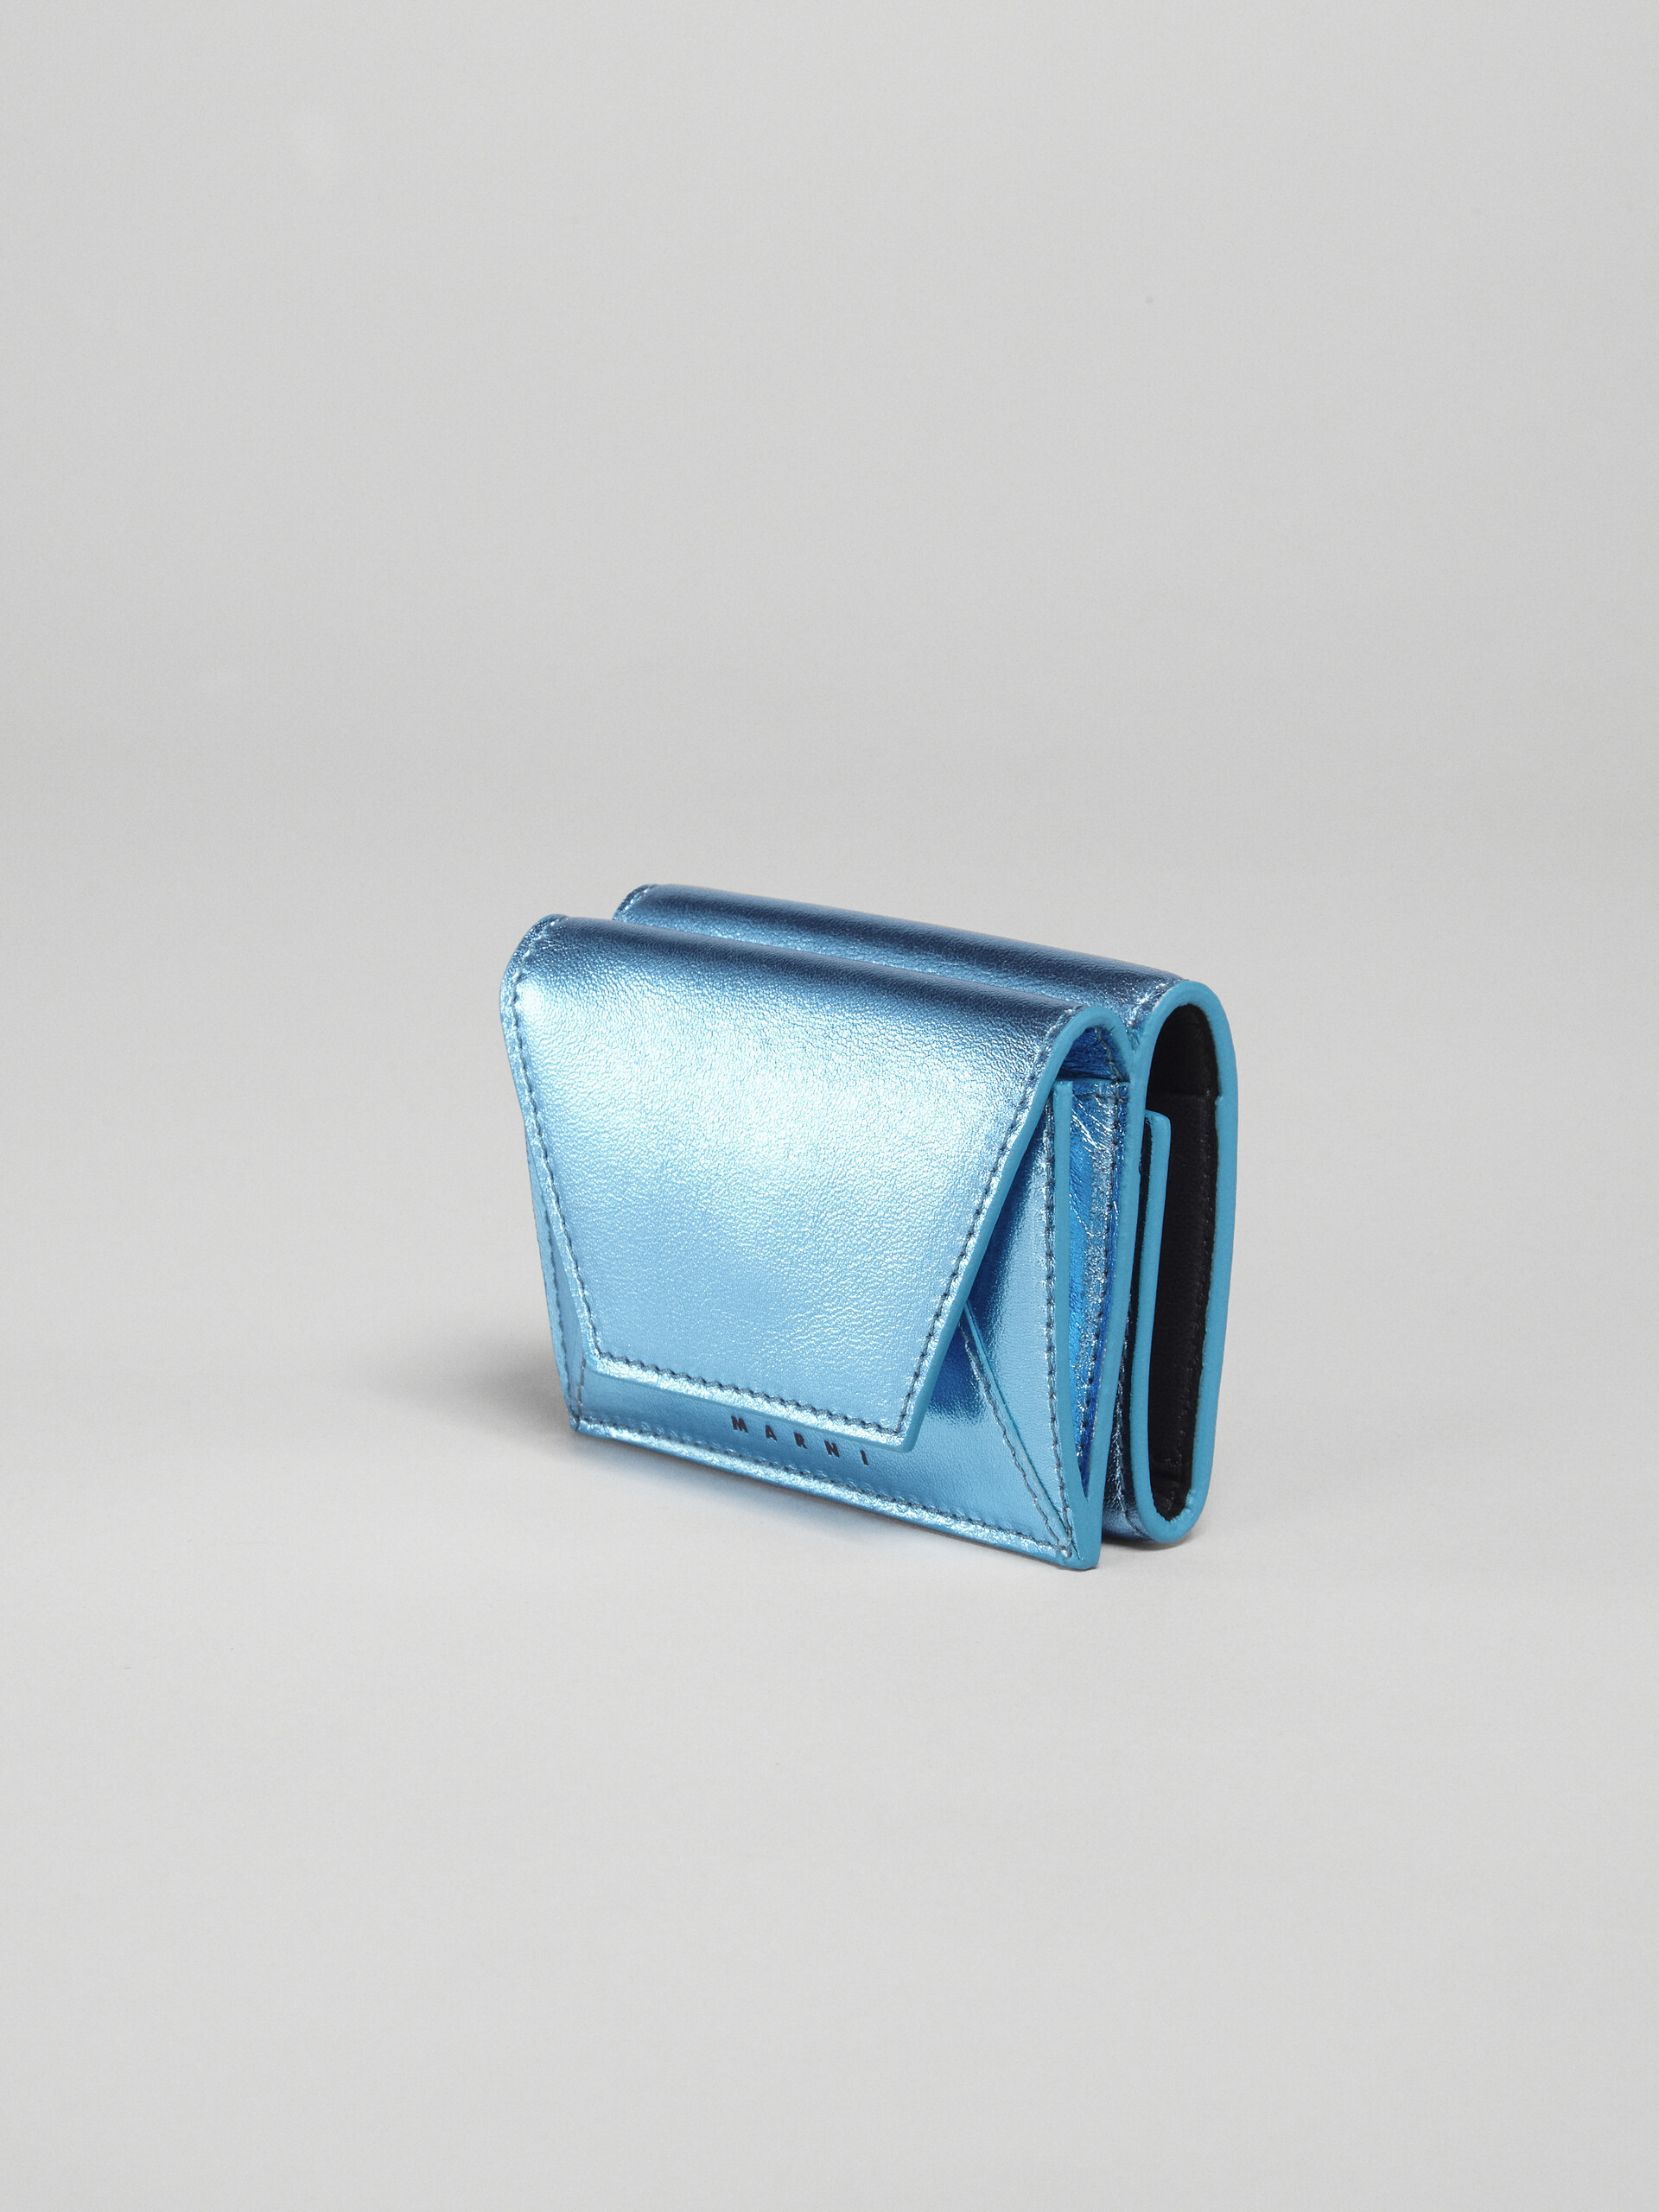 ブルーメタリック調 ナッパレザー三つ折りウォレット - 財布 - Image 4